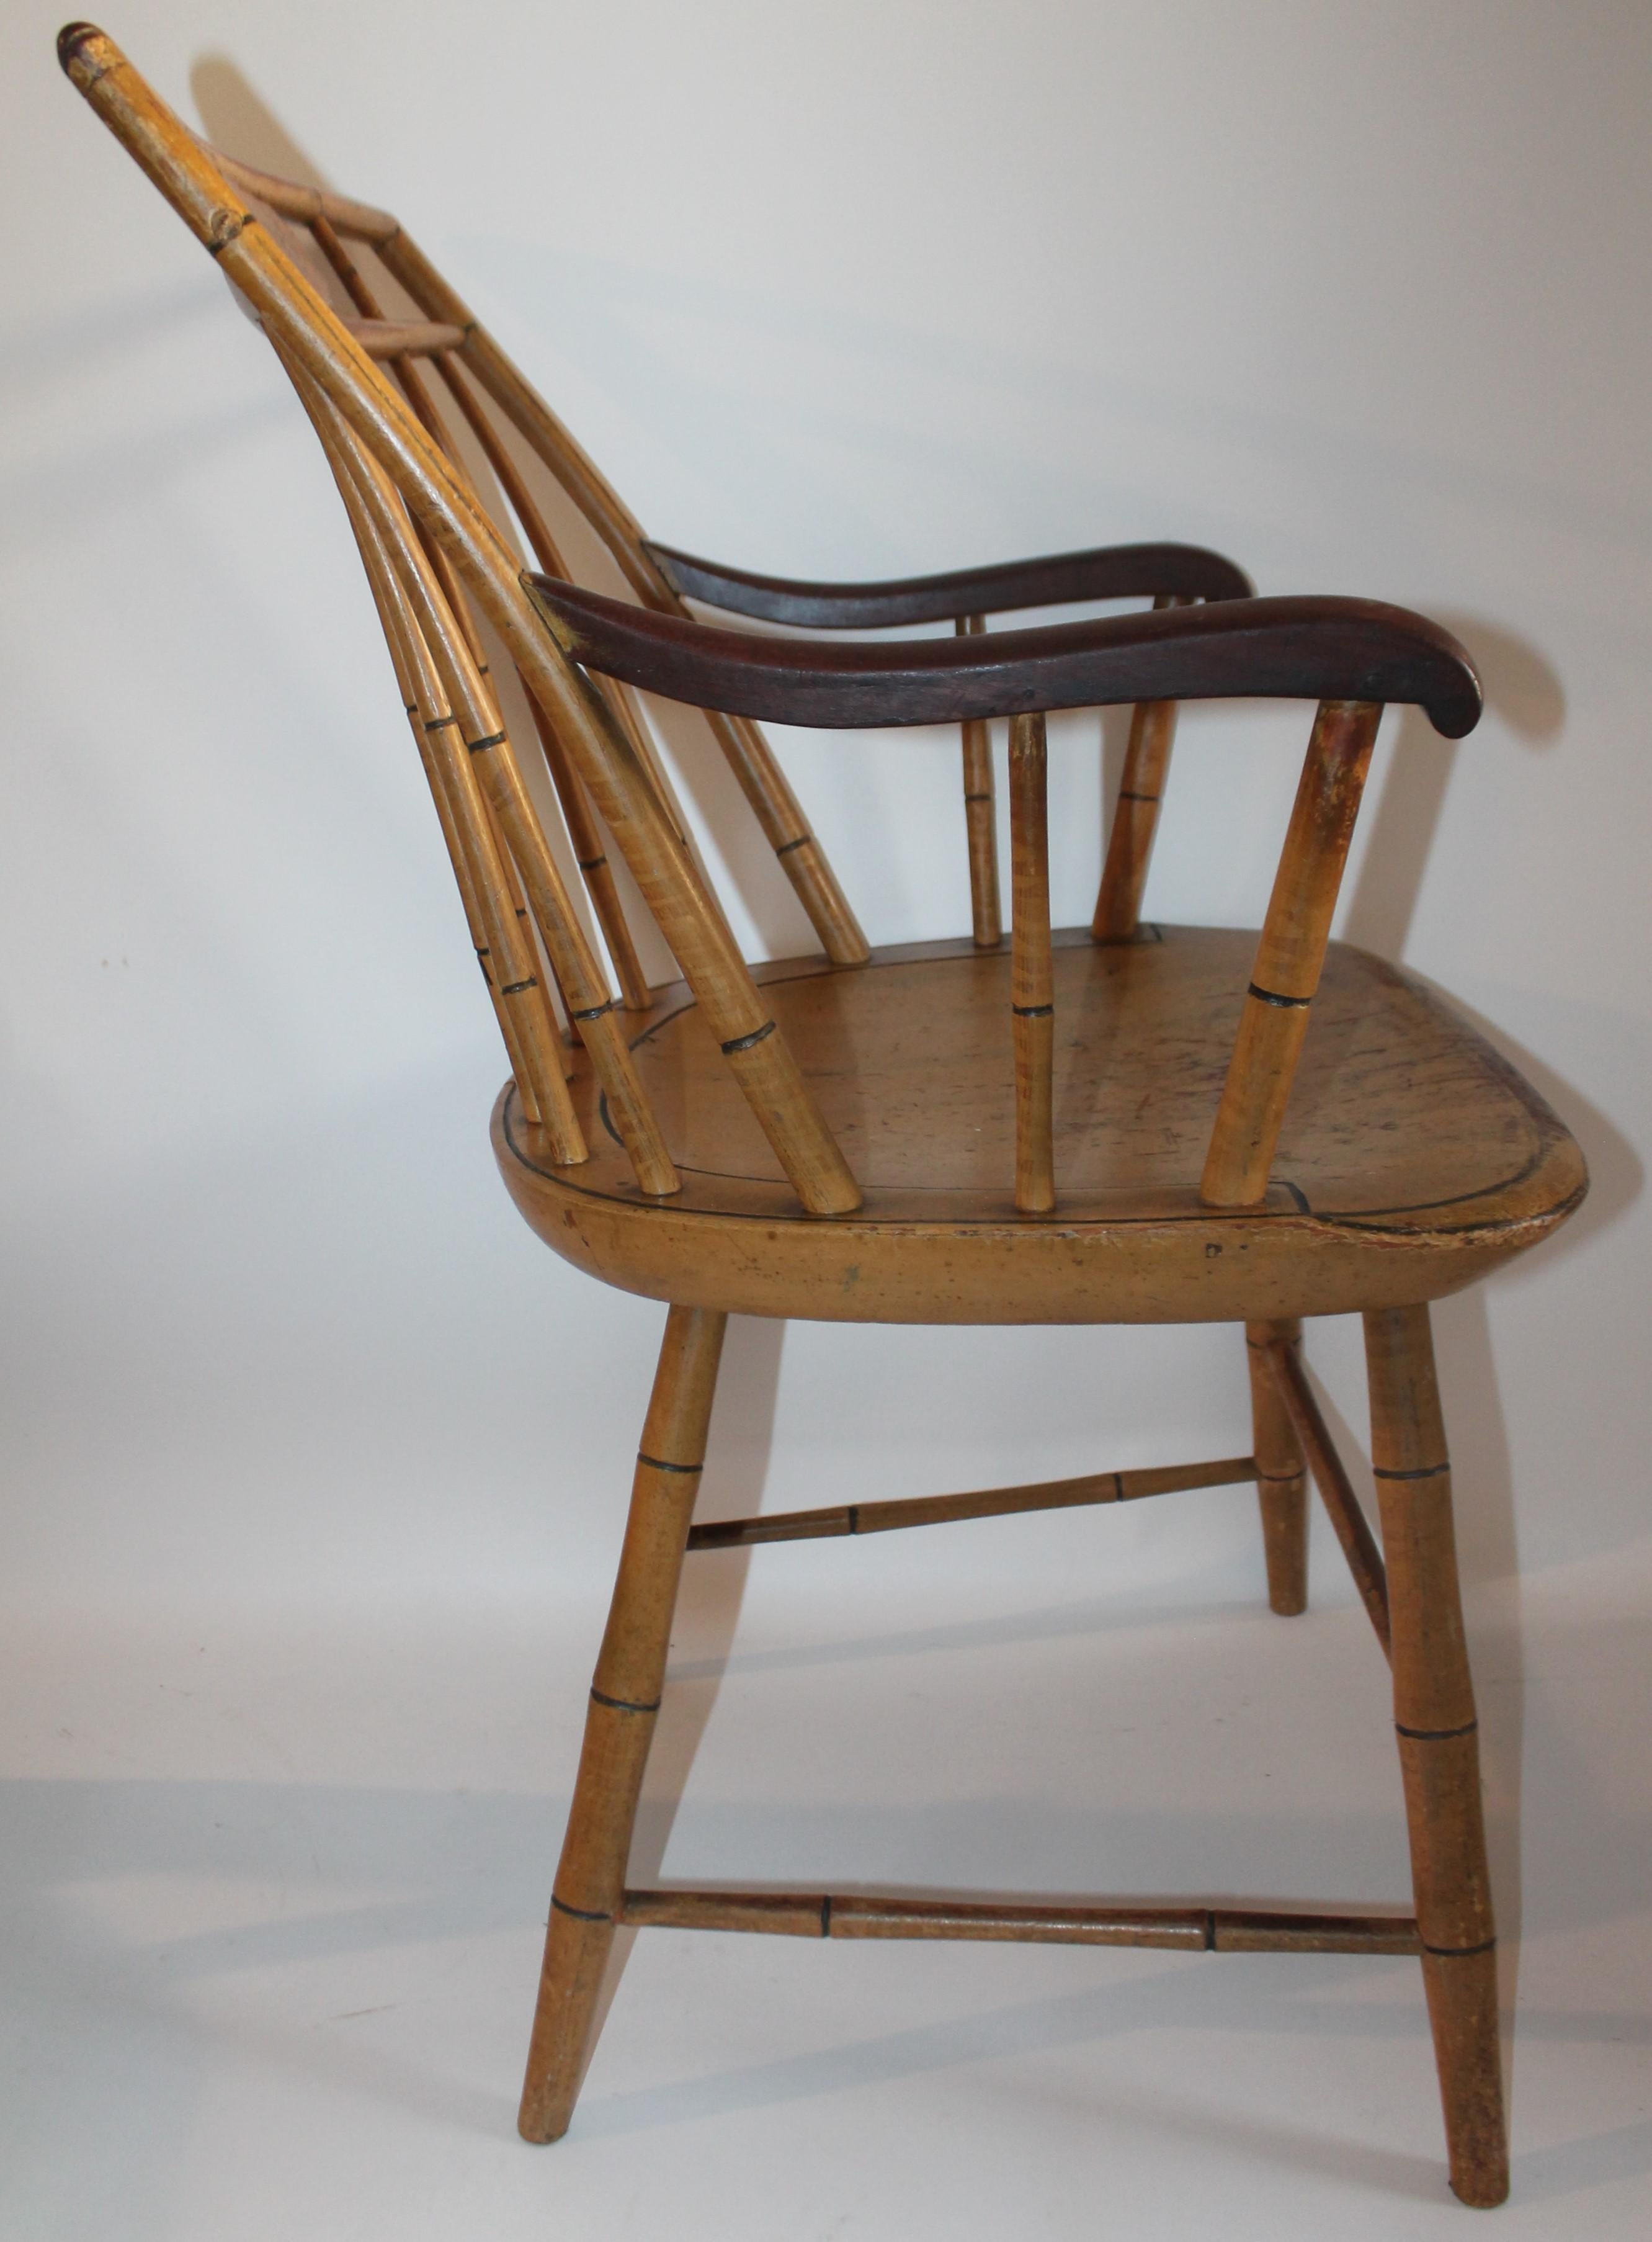 Cet étonnant fauteuil Windsor du 19ème siècle, peint à la moutarde, a une surface merveilleusement intacte et est en bon état. Les bras sont également d'origine et non peints.